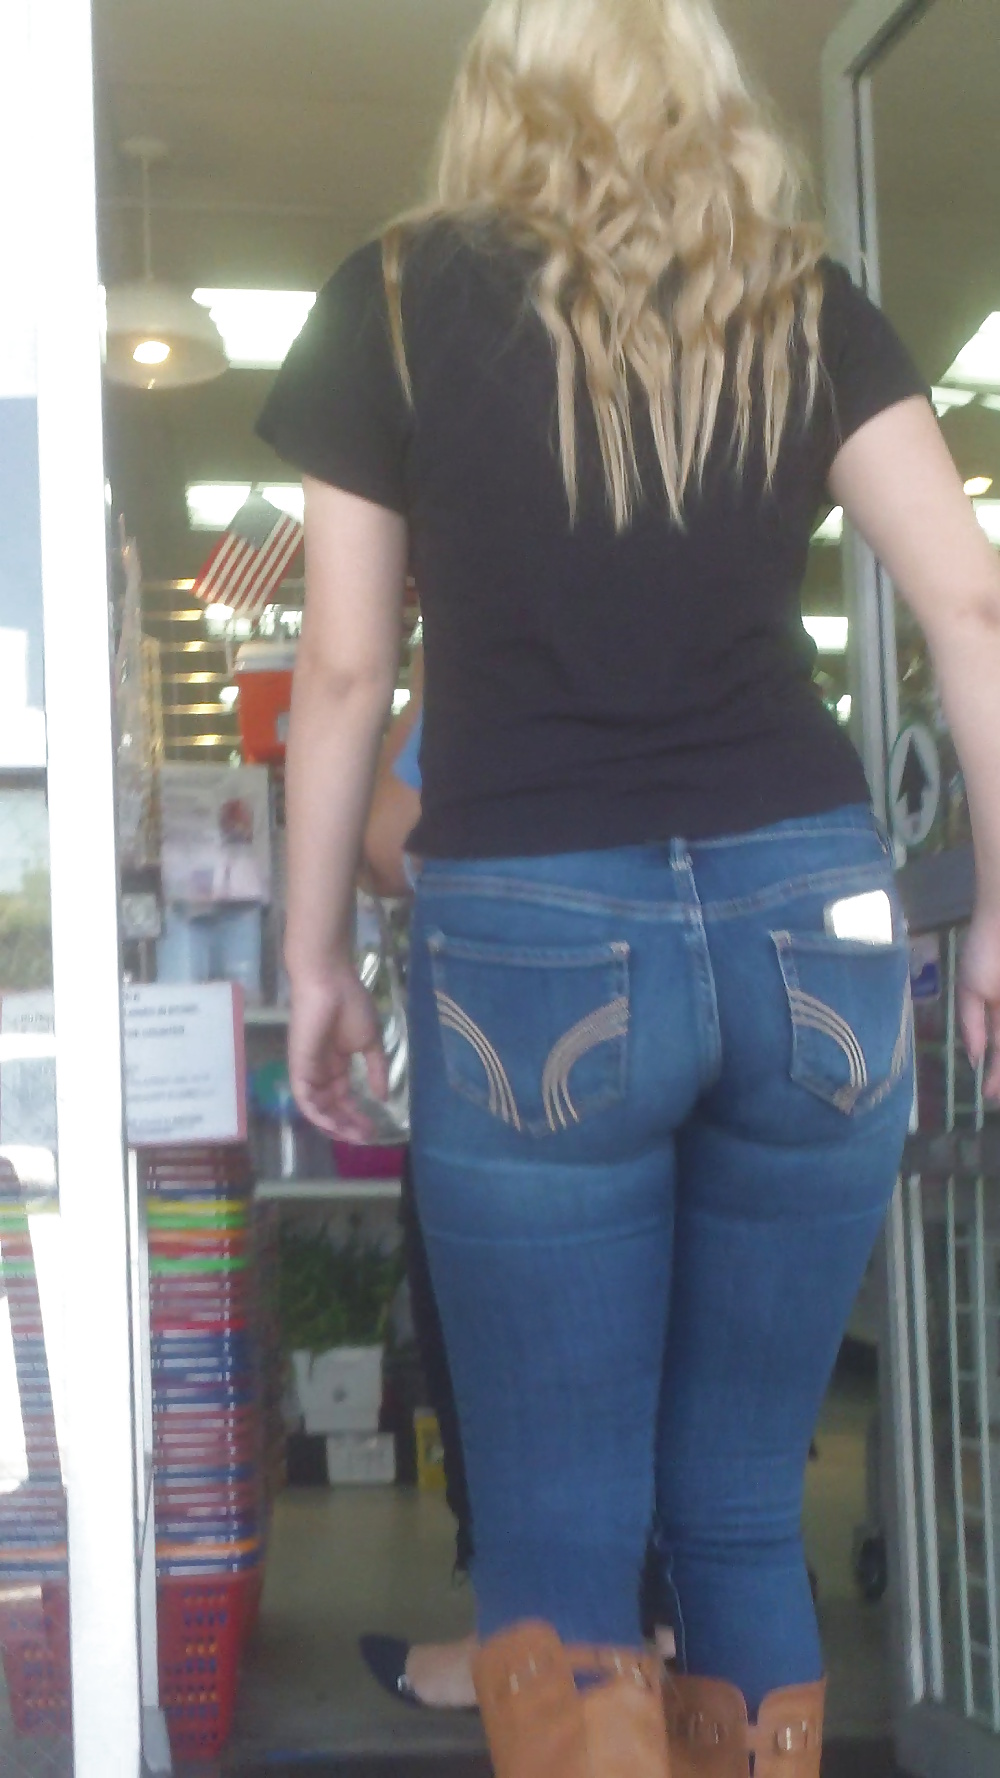 Popular teen girls ass & butt in jeans part 4  #26740551